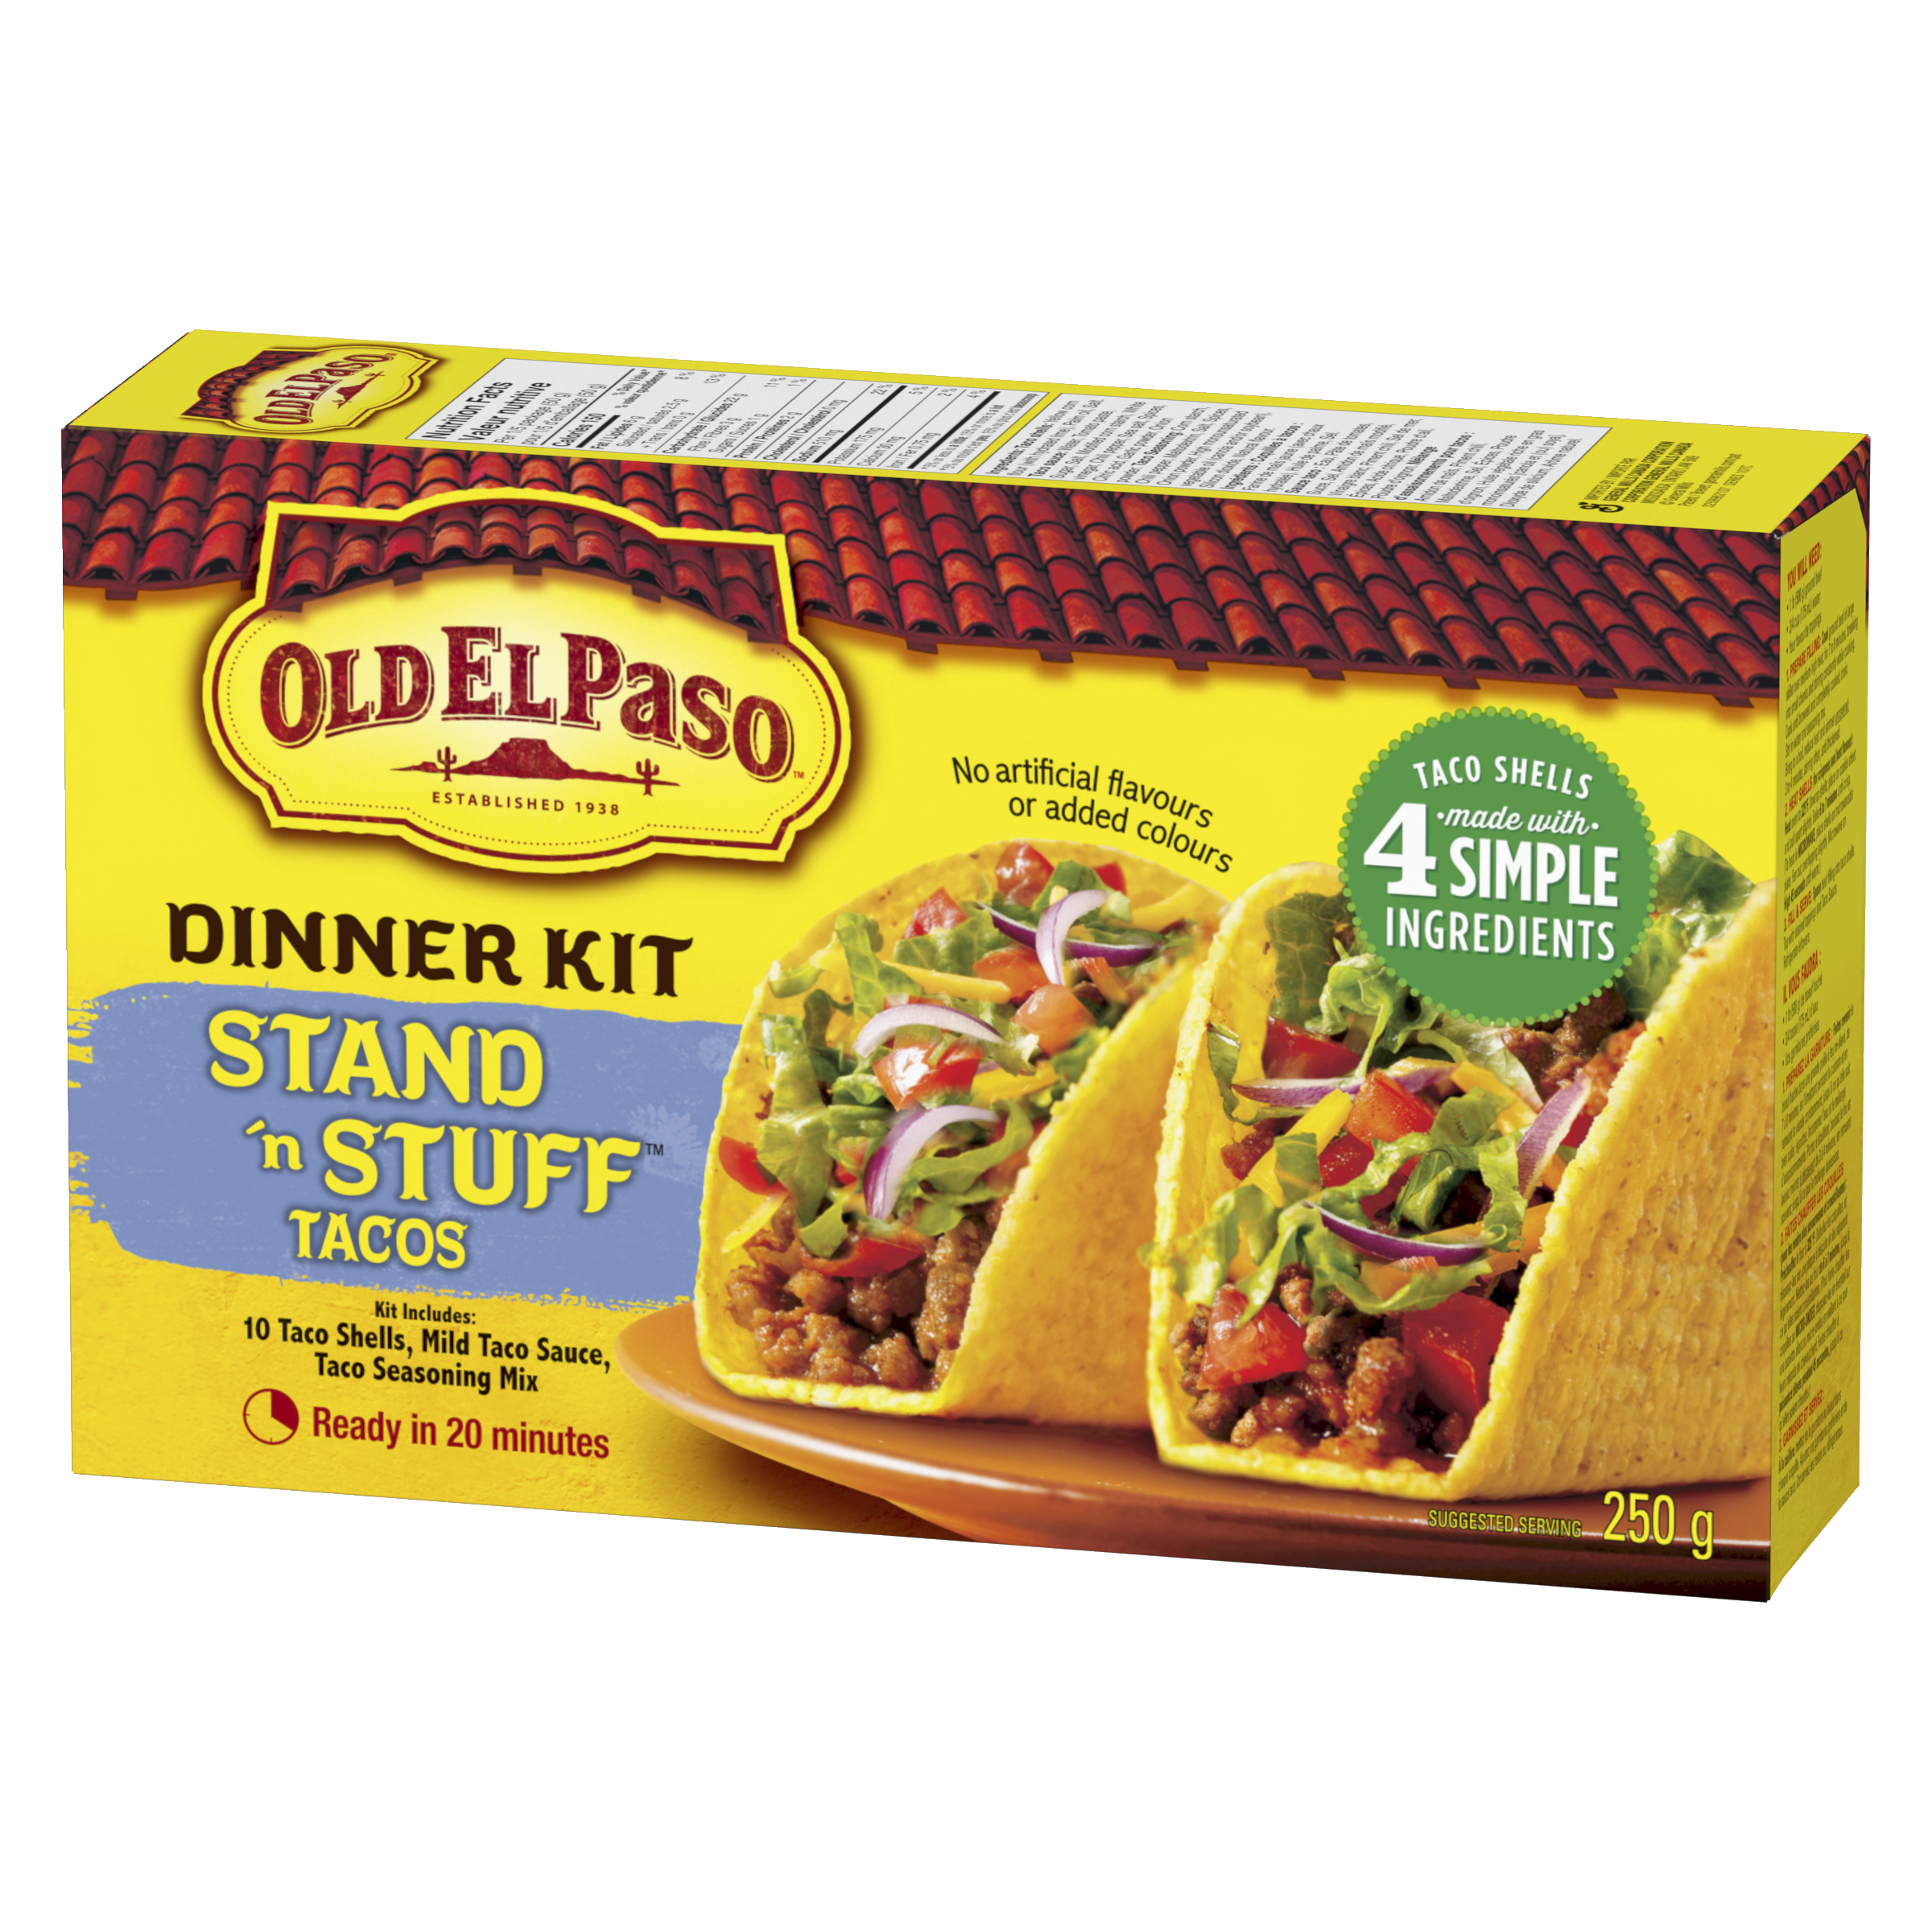 Stand 'n Stuff Taco Dinner Kit